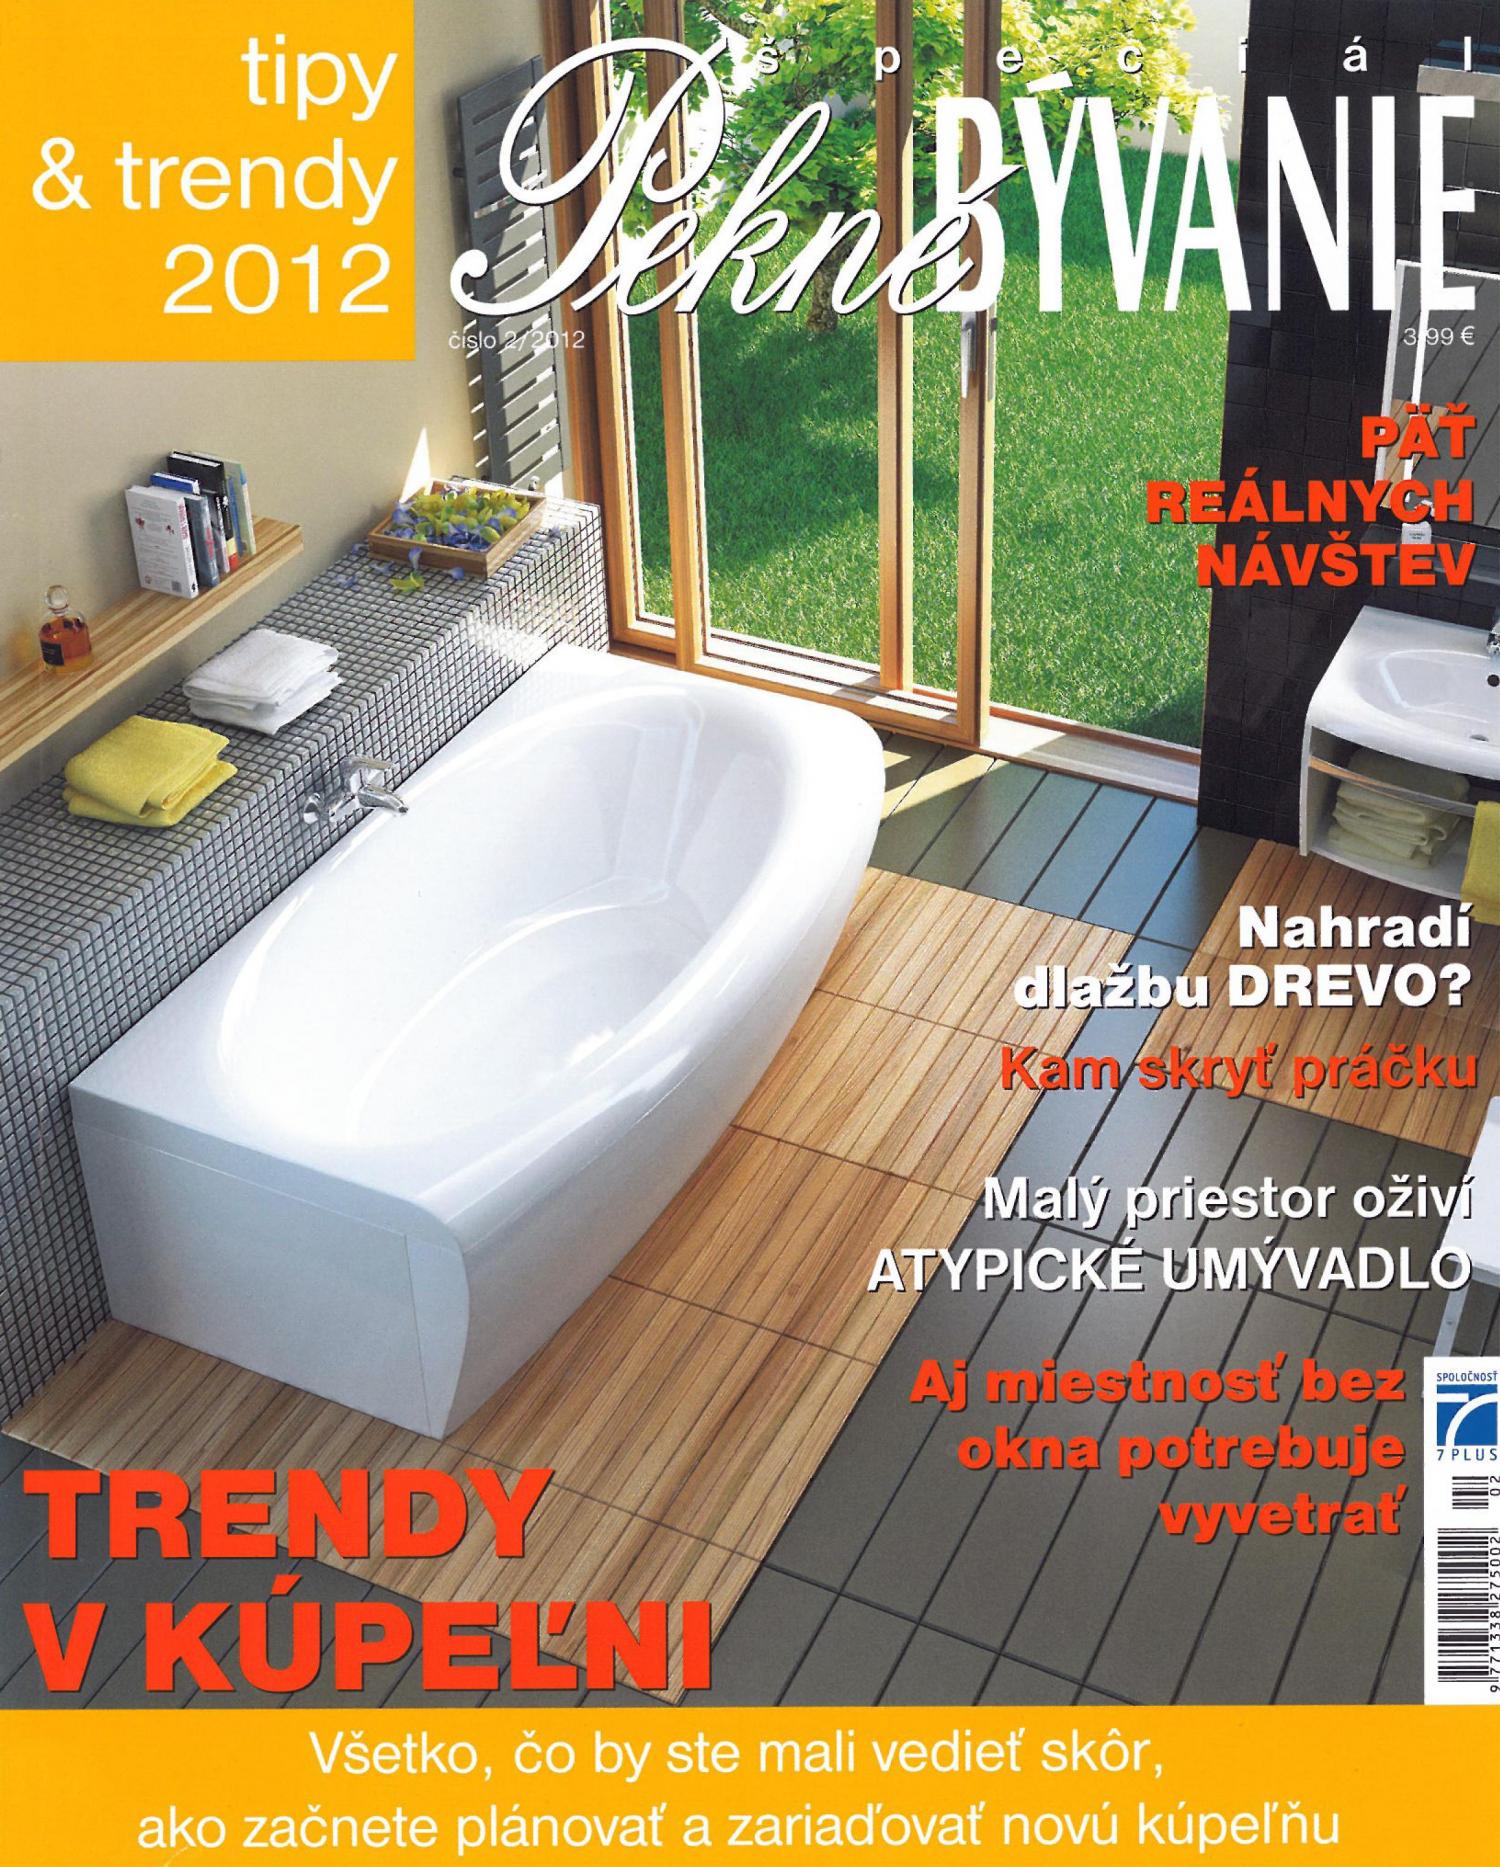 Pekné Bývanie špeciál 2012 - trendy v kúpeľni, 06/2012, Bez bariér, 08-11